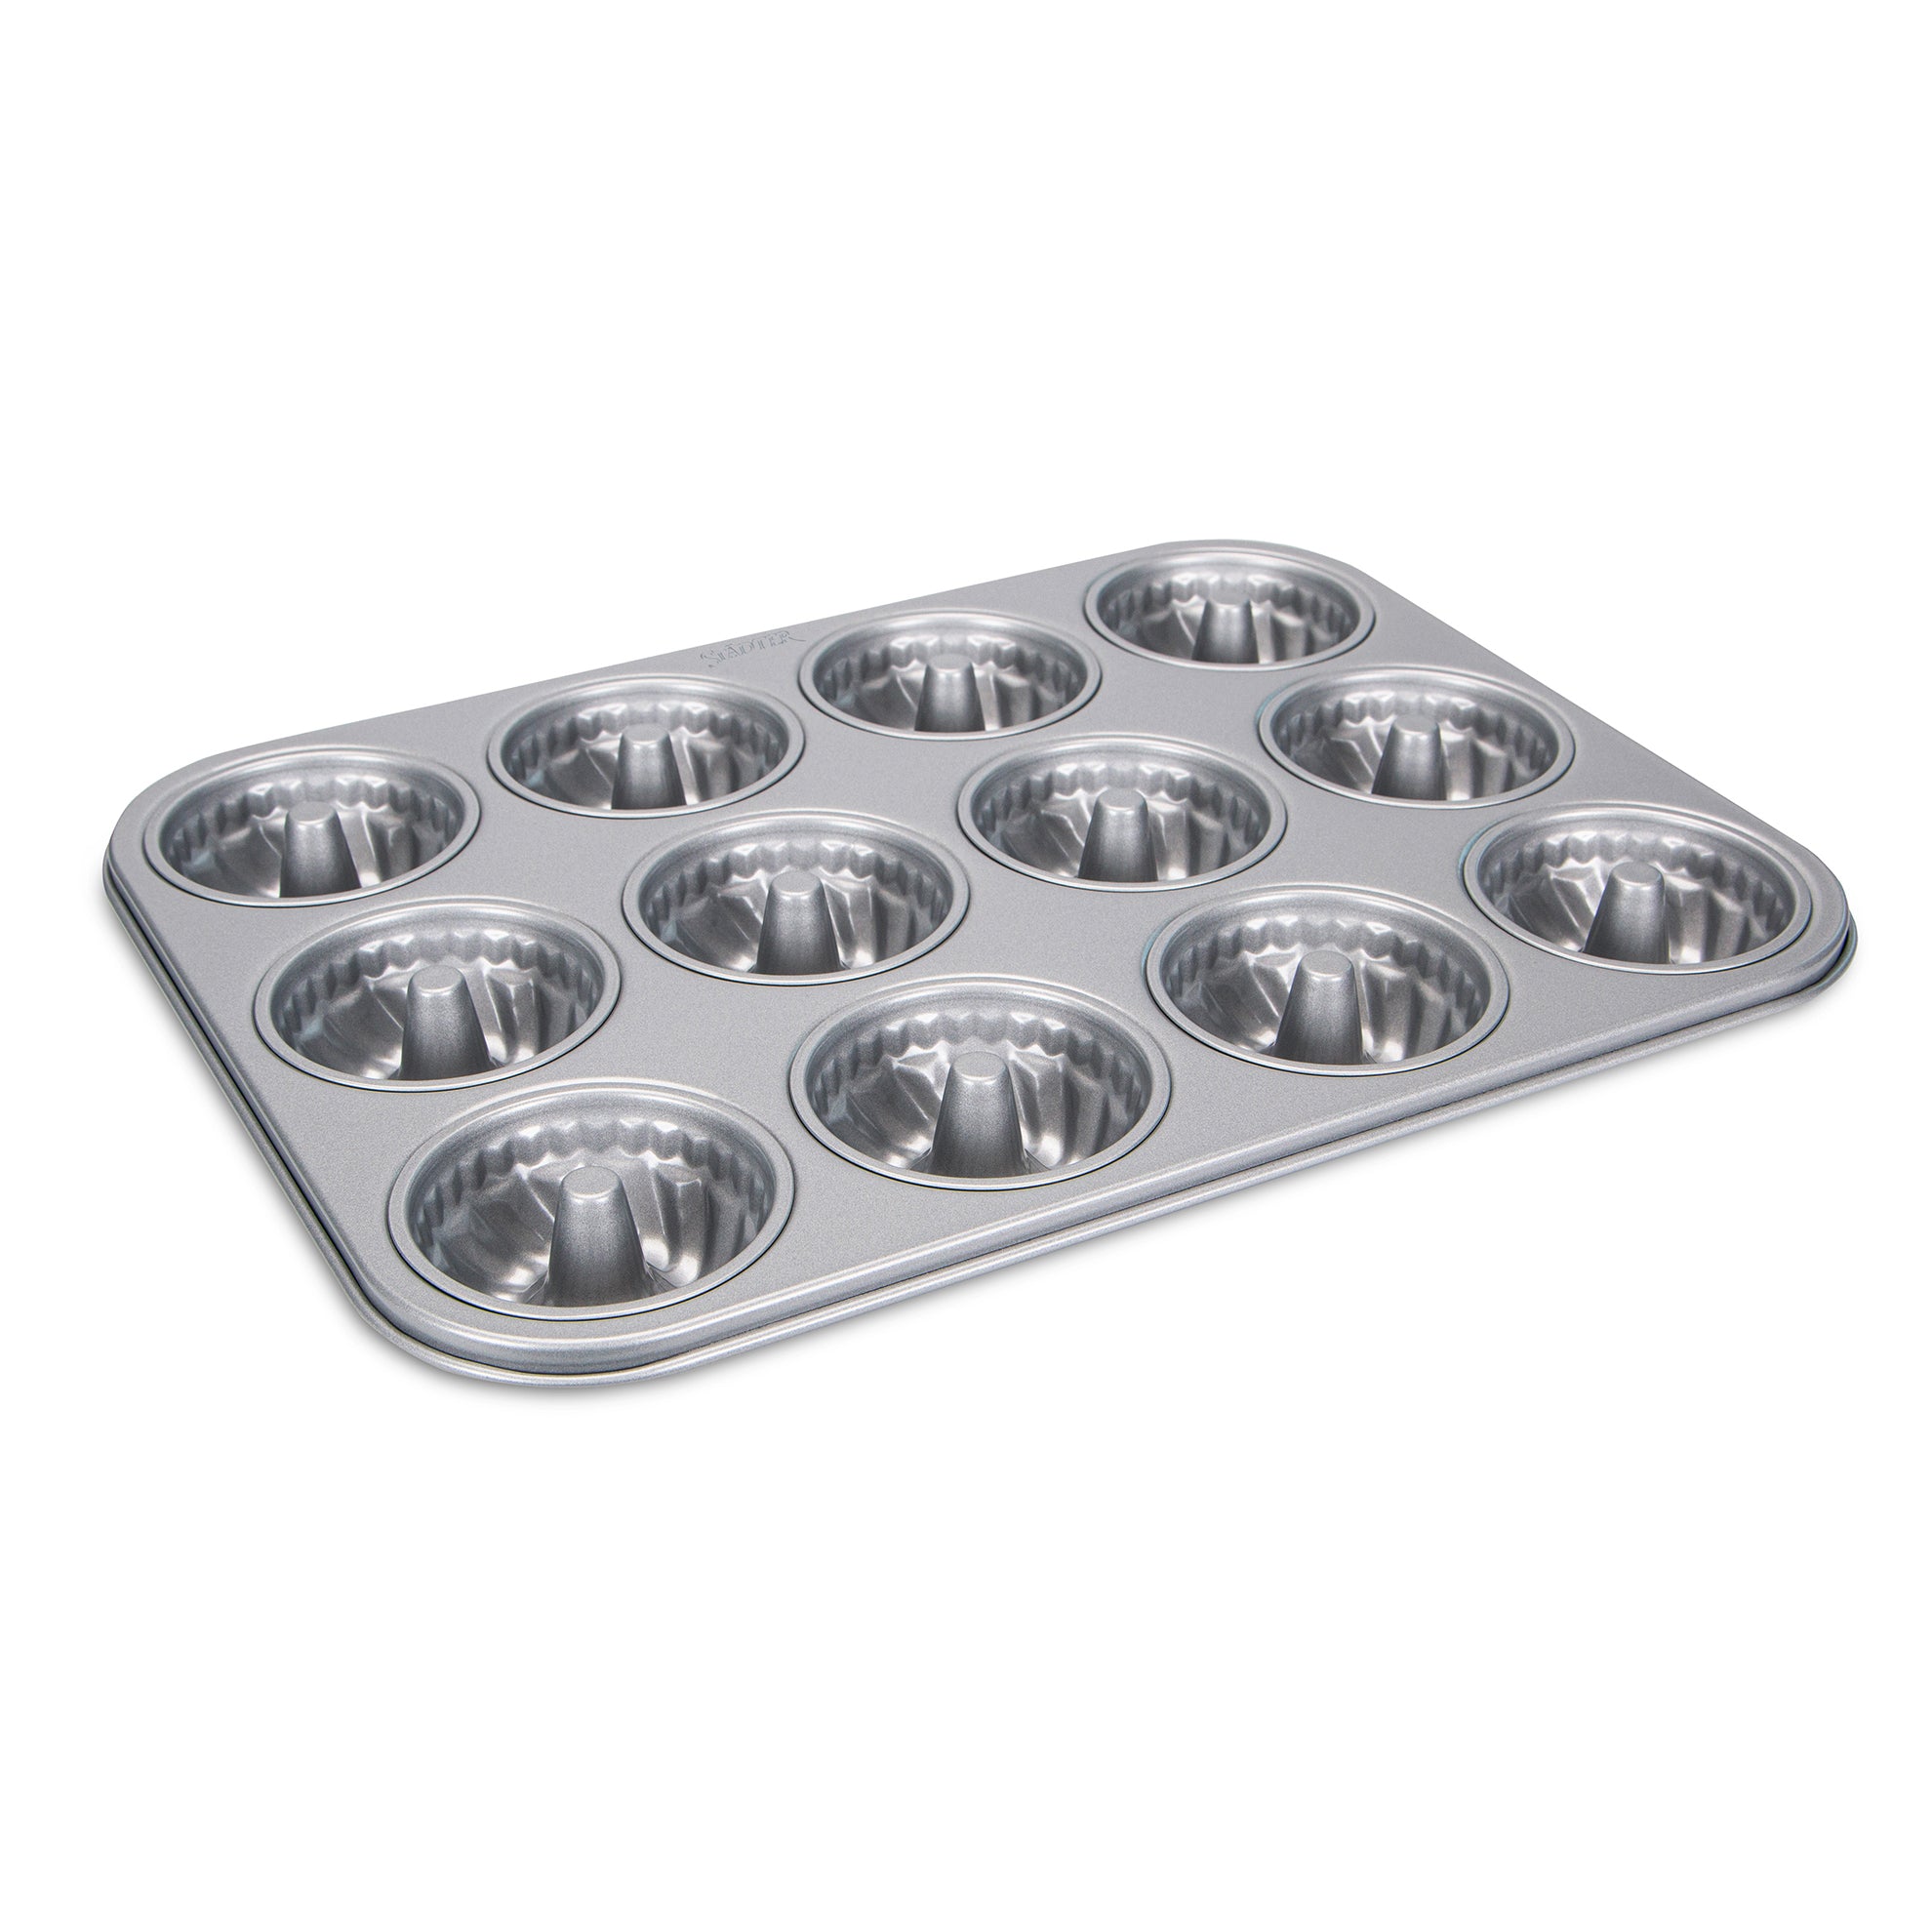 STÄDTER We love baking - 24 cups Mini bundt pan